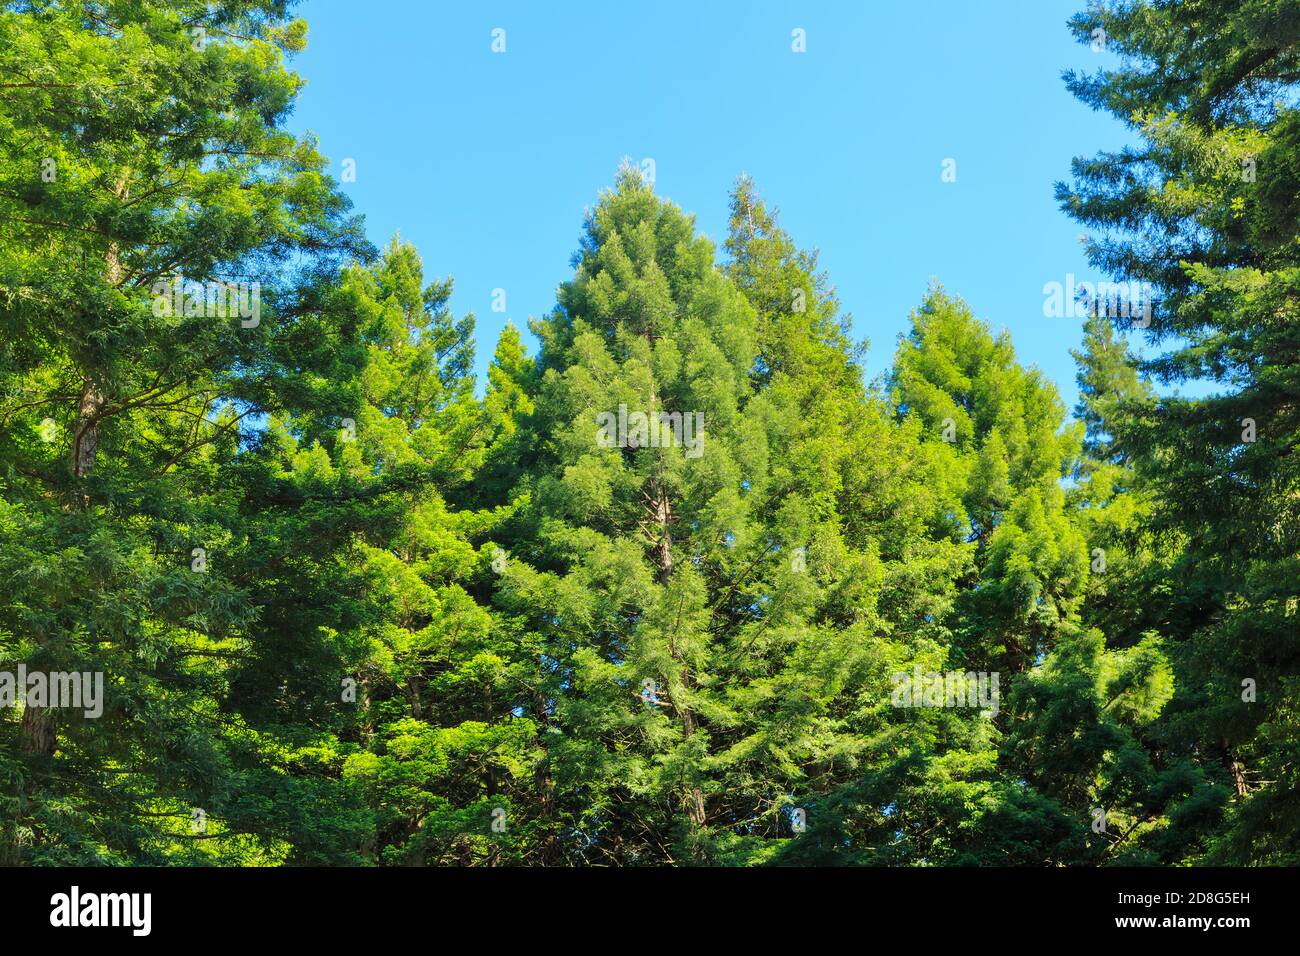 Ein Wald aus kalifornischen Redwoods mit üppigem grünen Laub. Fotografiert in Whakarewarewa, Neuseeland, wo die Bäume eingeführt wurden Stockfoto